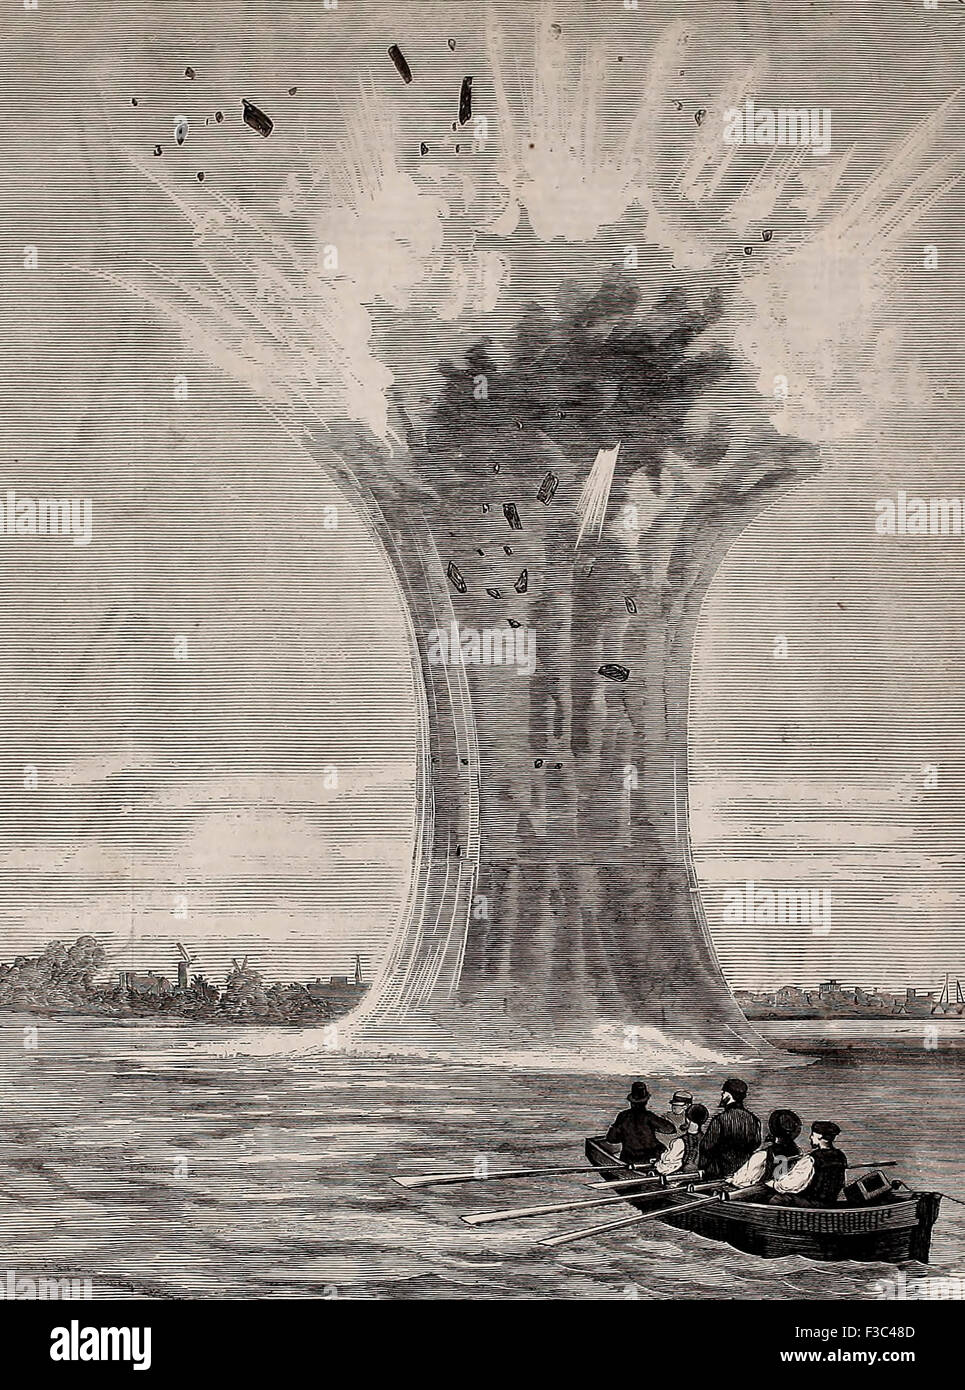 Experimente mit Torpedo-Granaten - Explosion von einem 440 Pfünder, USA Bürgerkrieg Stockfoto